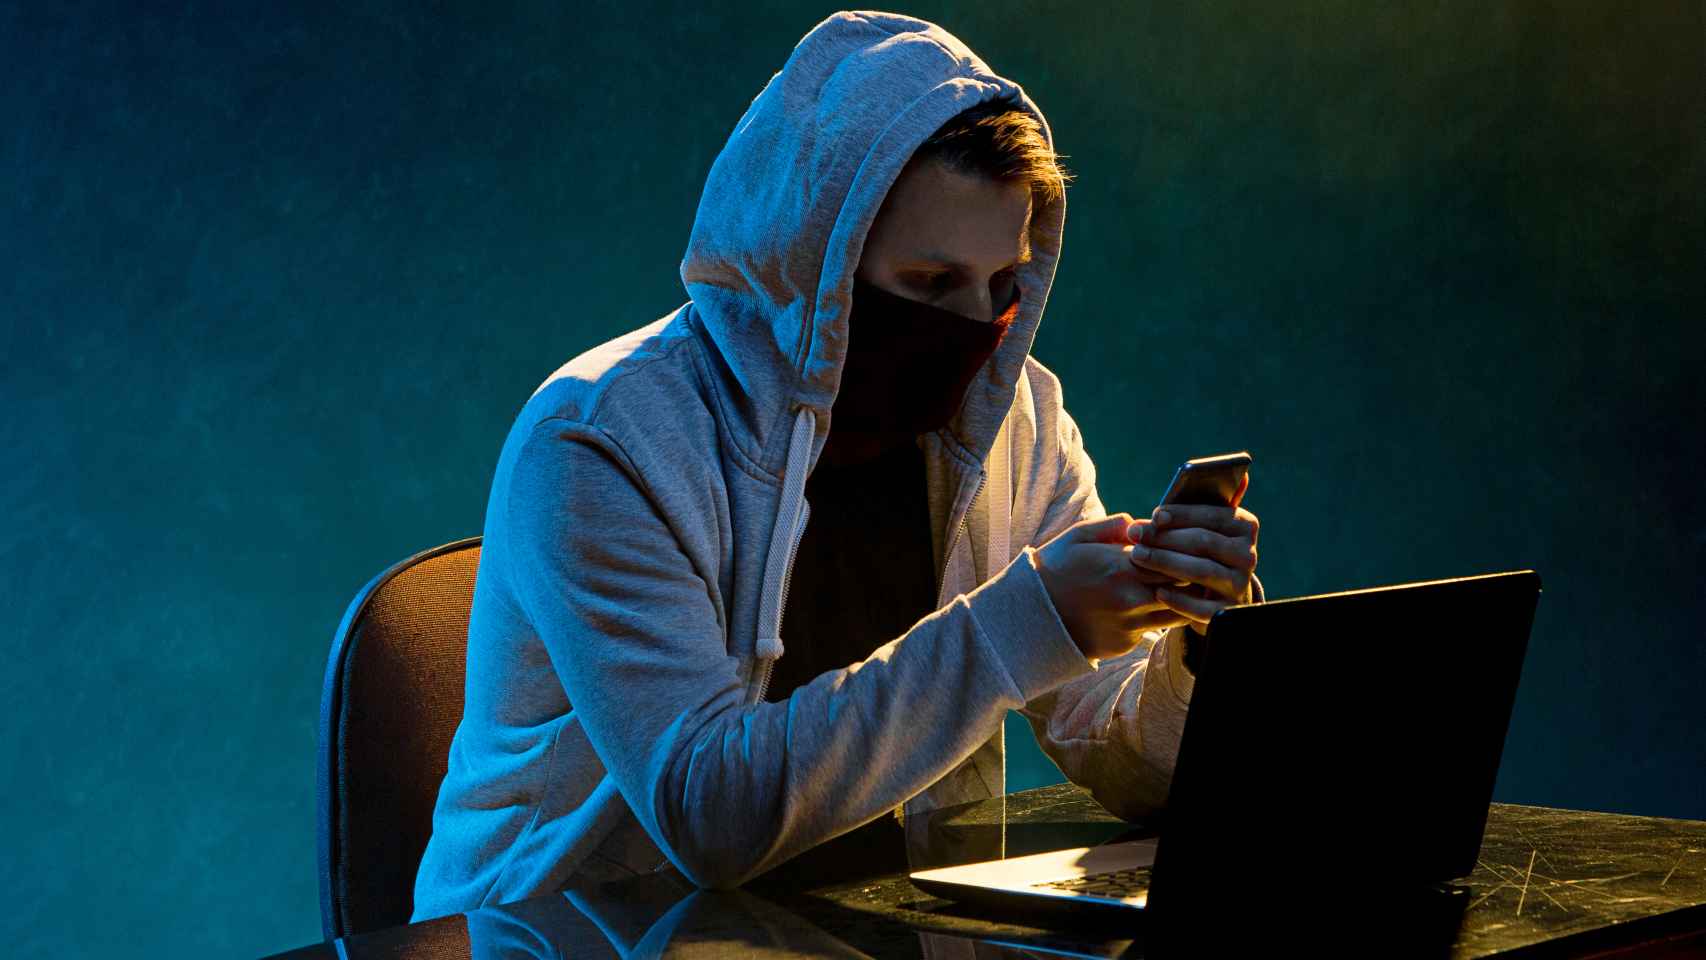 Ladrón con un ordenador.